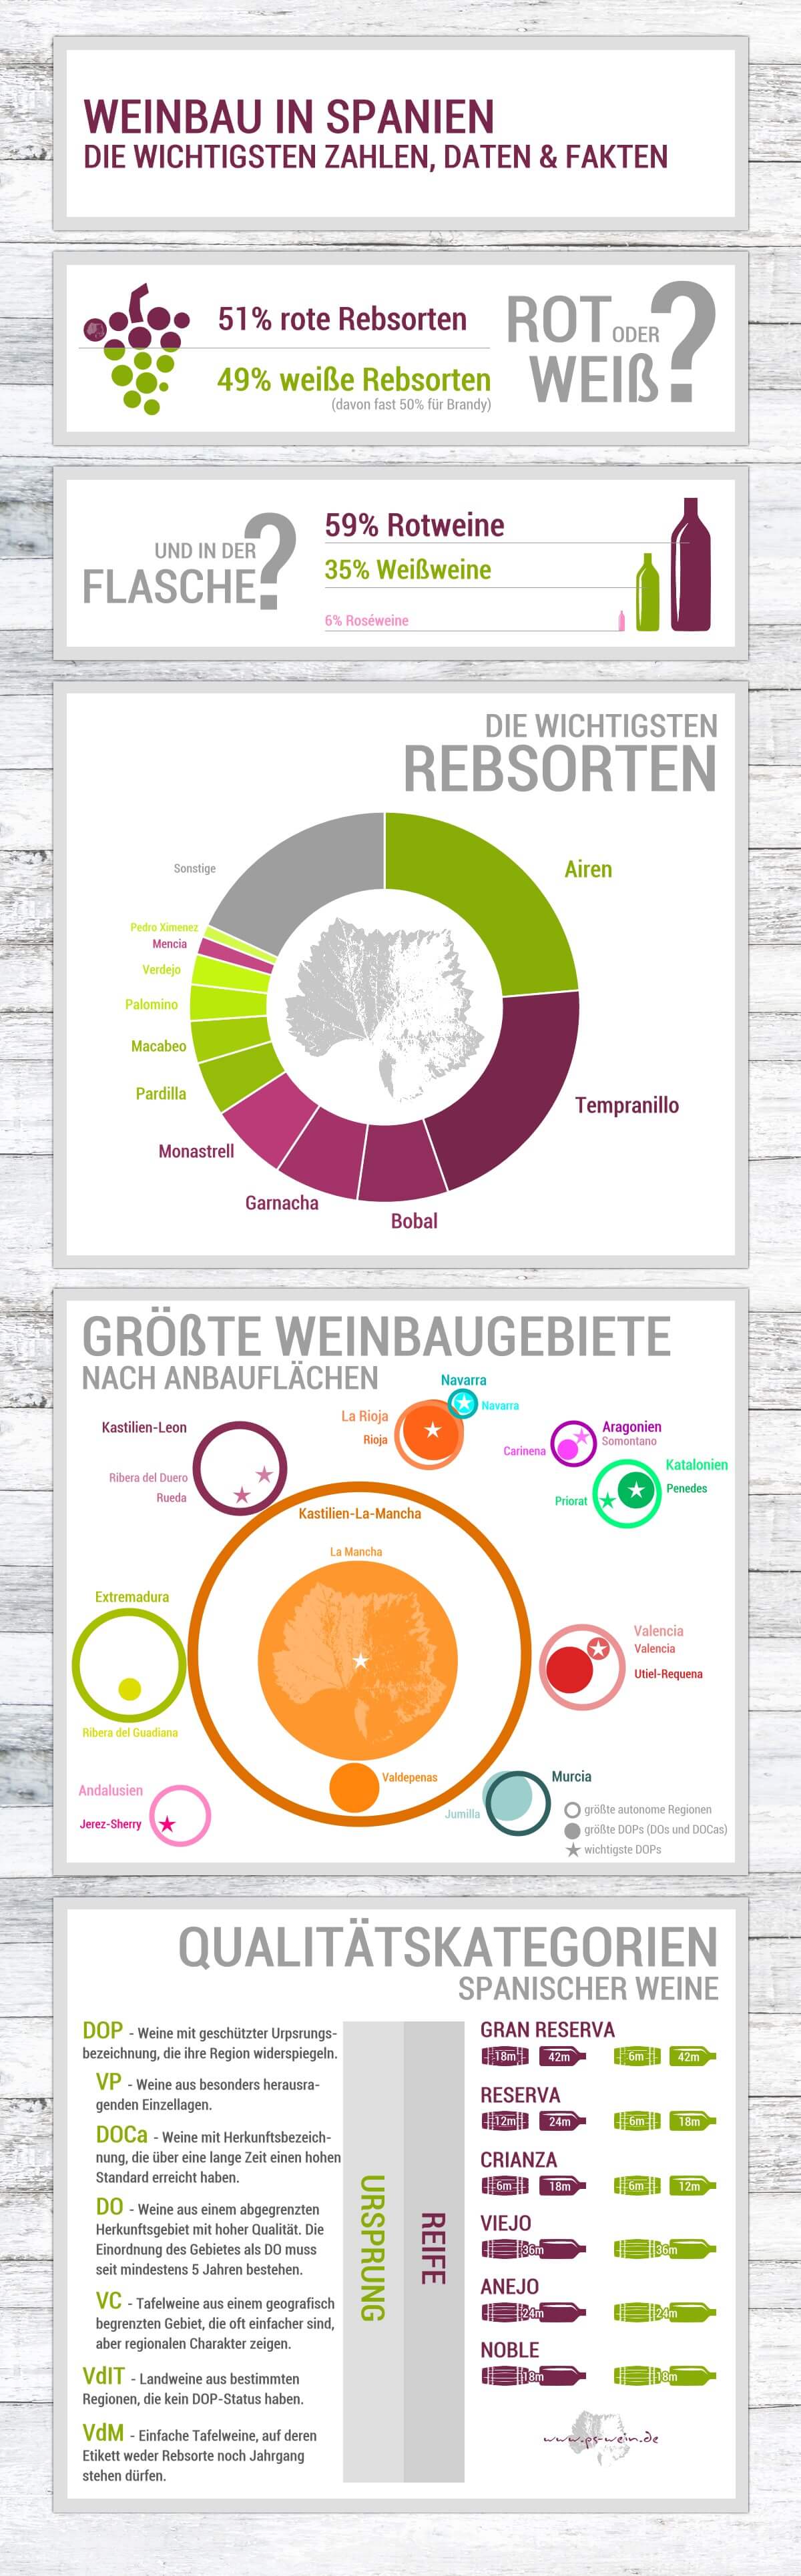 Infografik zum Weinbau in Spanien mit den wichtigsten Rebsorten, größten Regionen und Qualitätsstufen